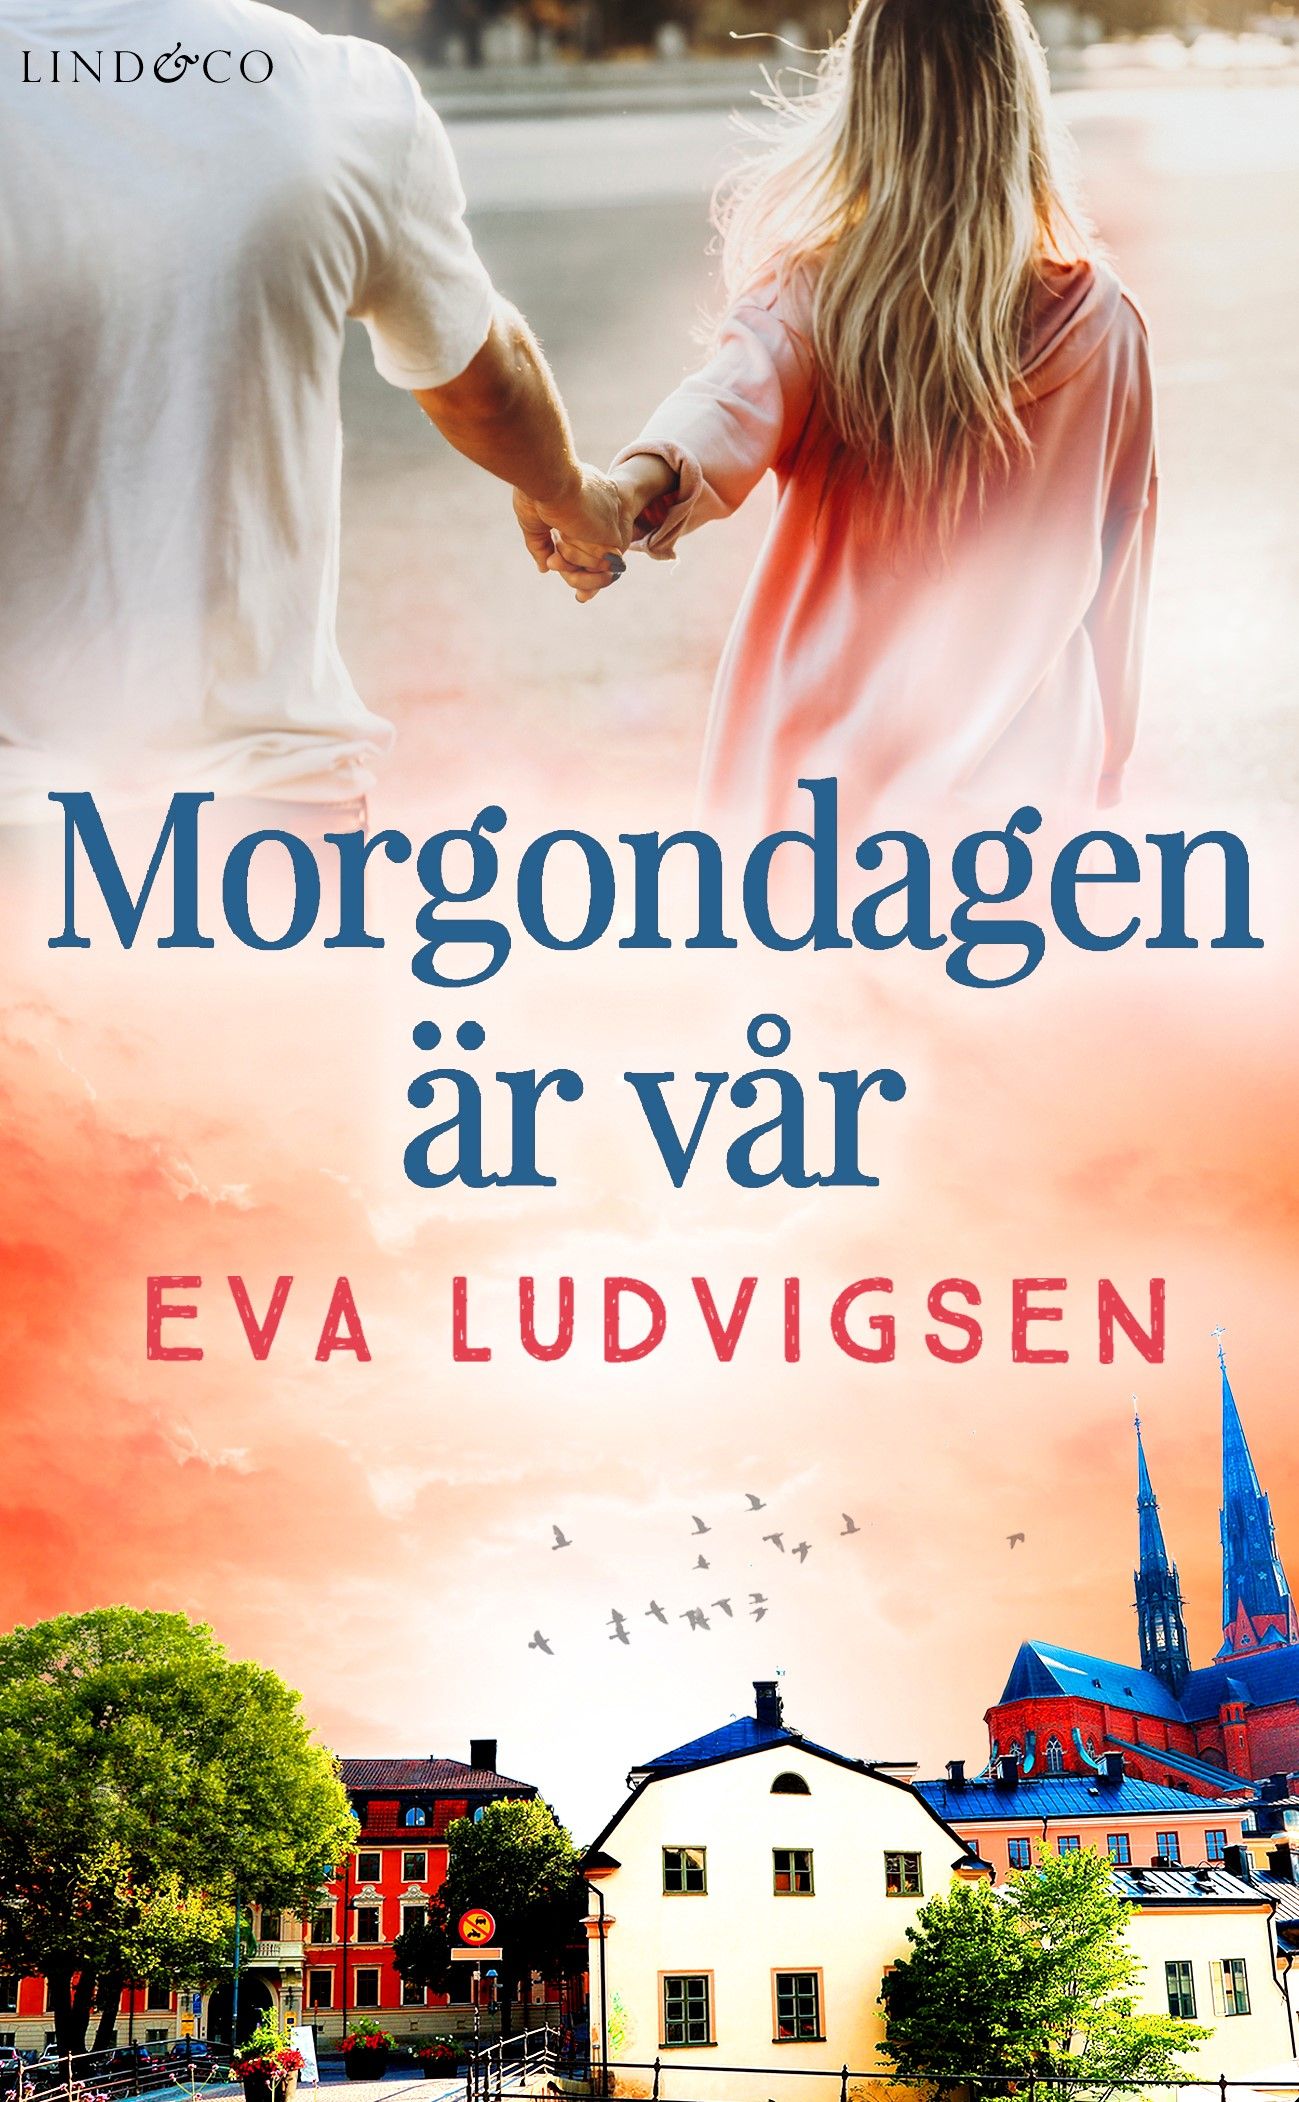 Morgondagen är vår, eBook by Eva Ludvigsen